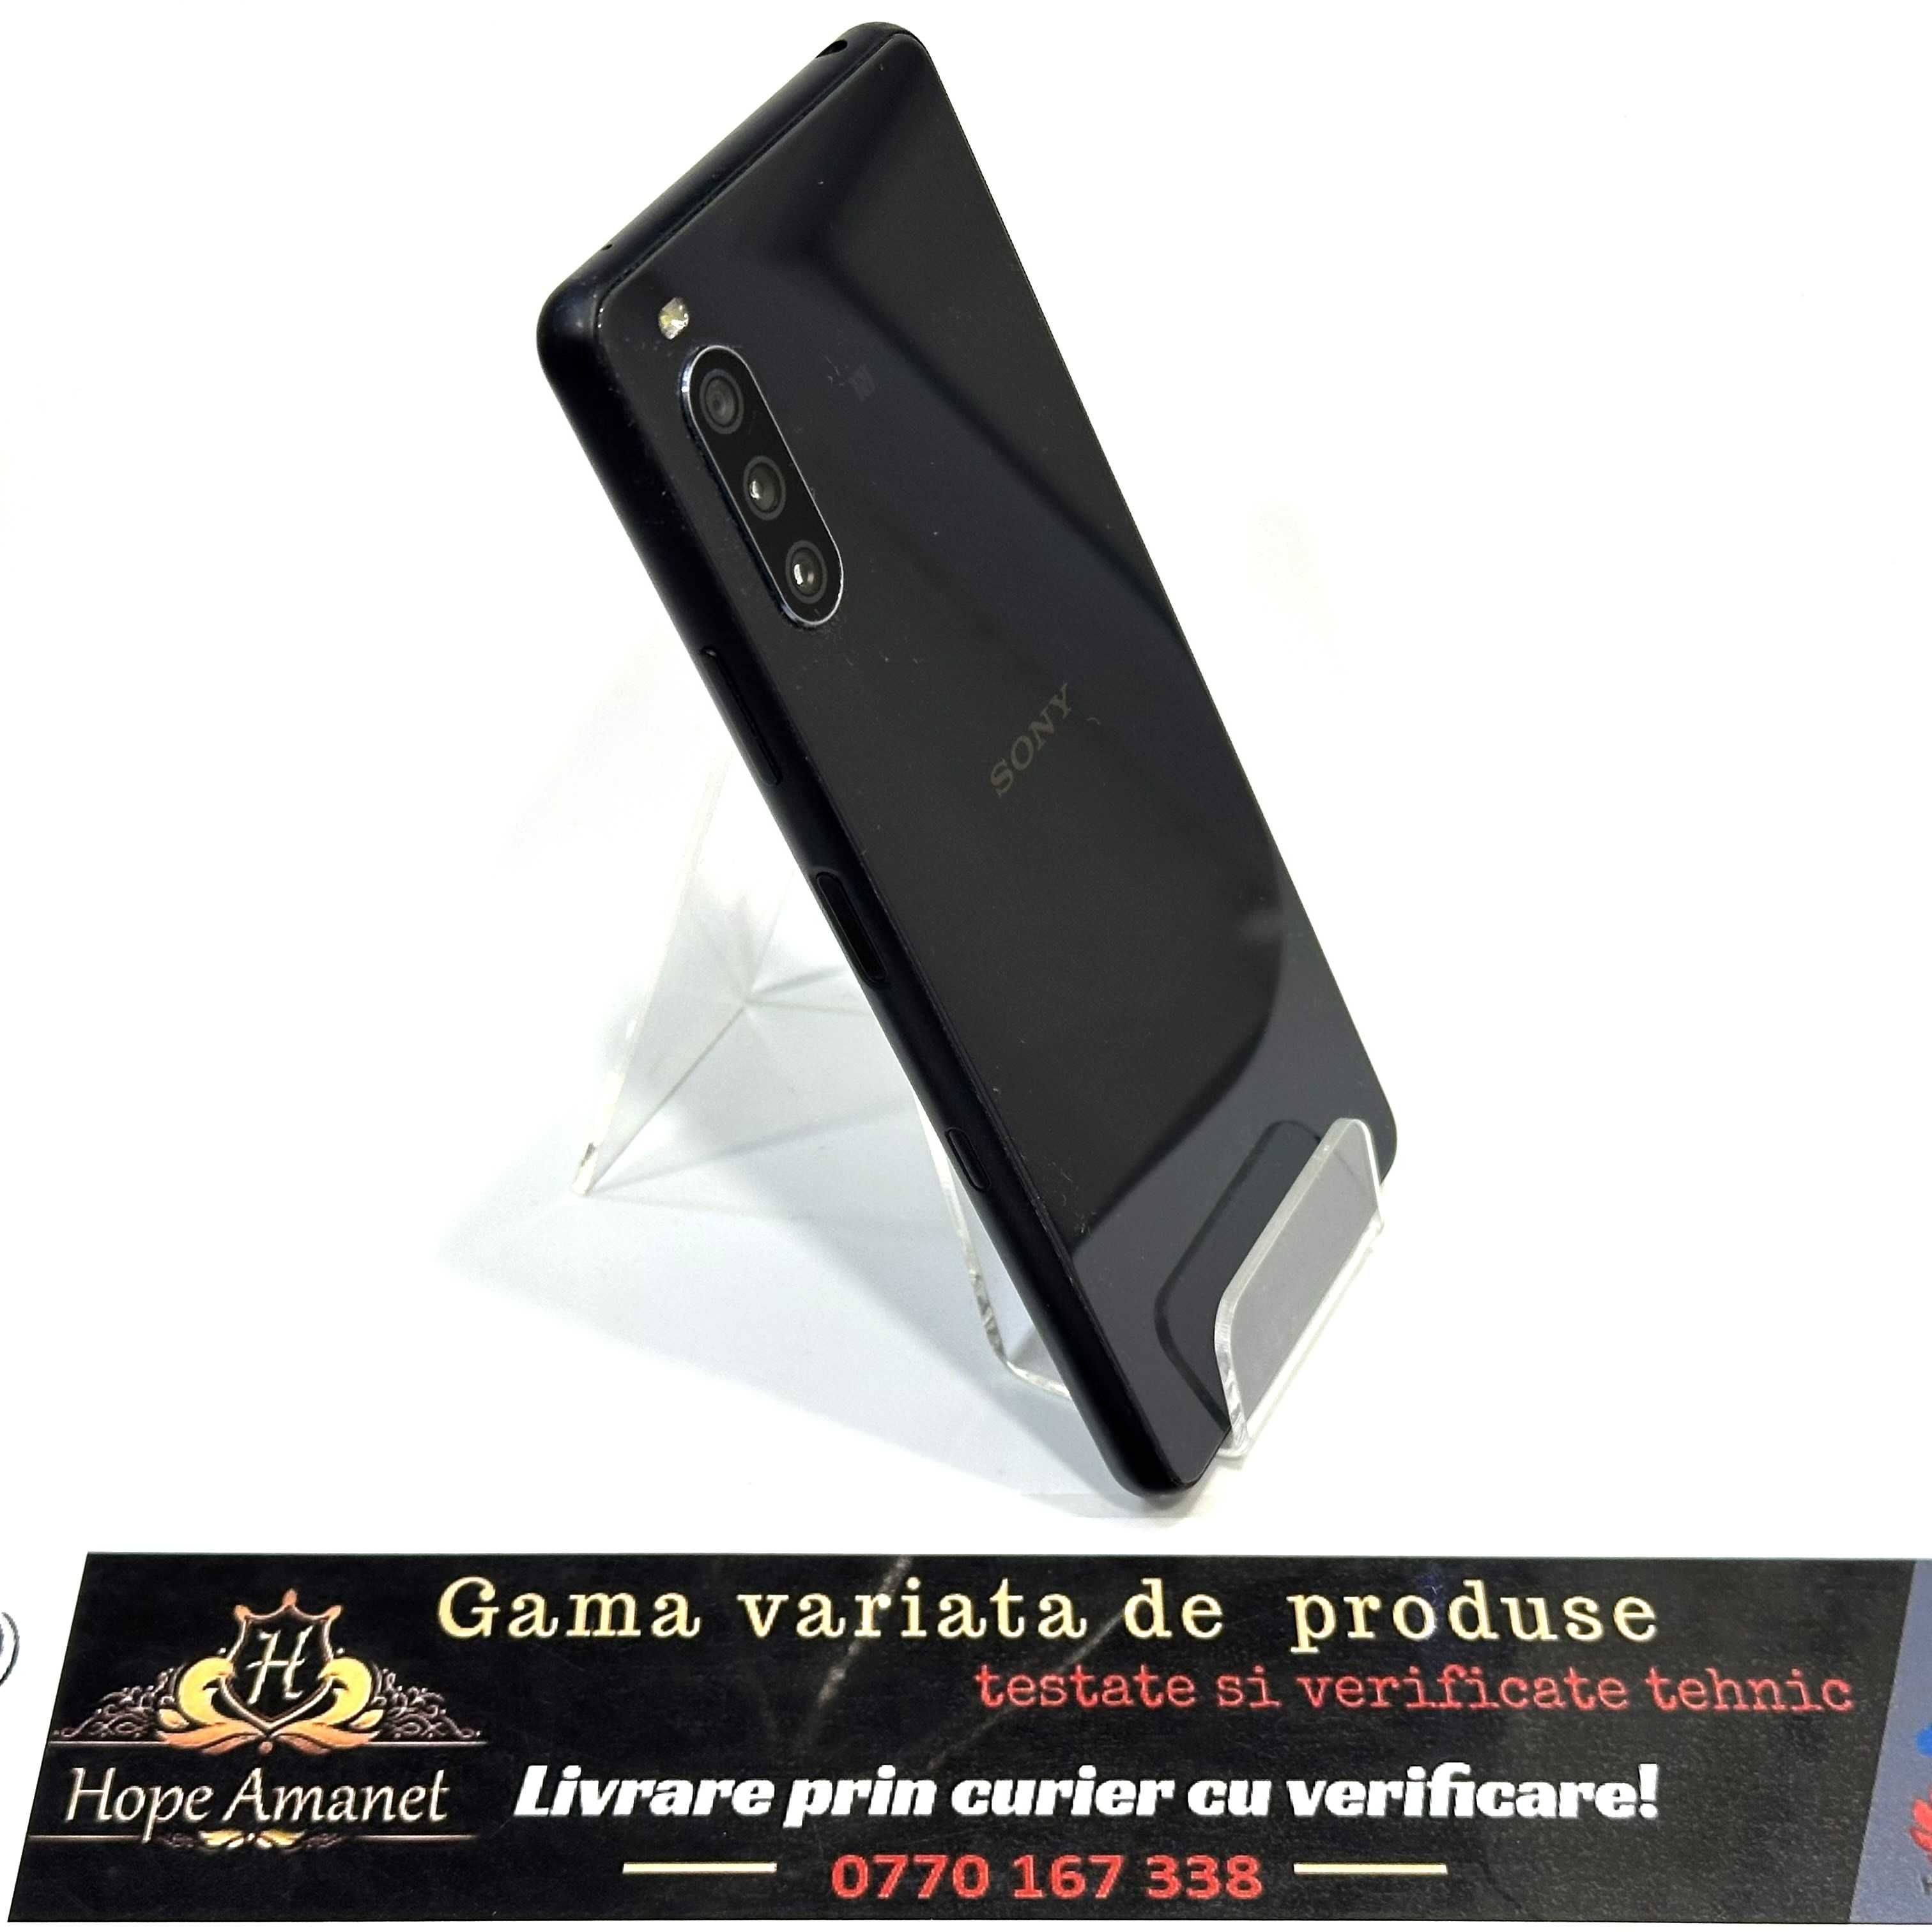 Hope Amanet P8 Sony Xperia 10 III 128GB